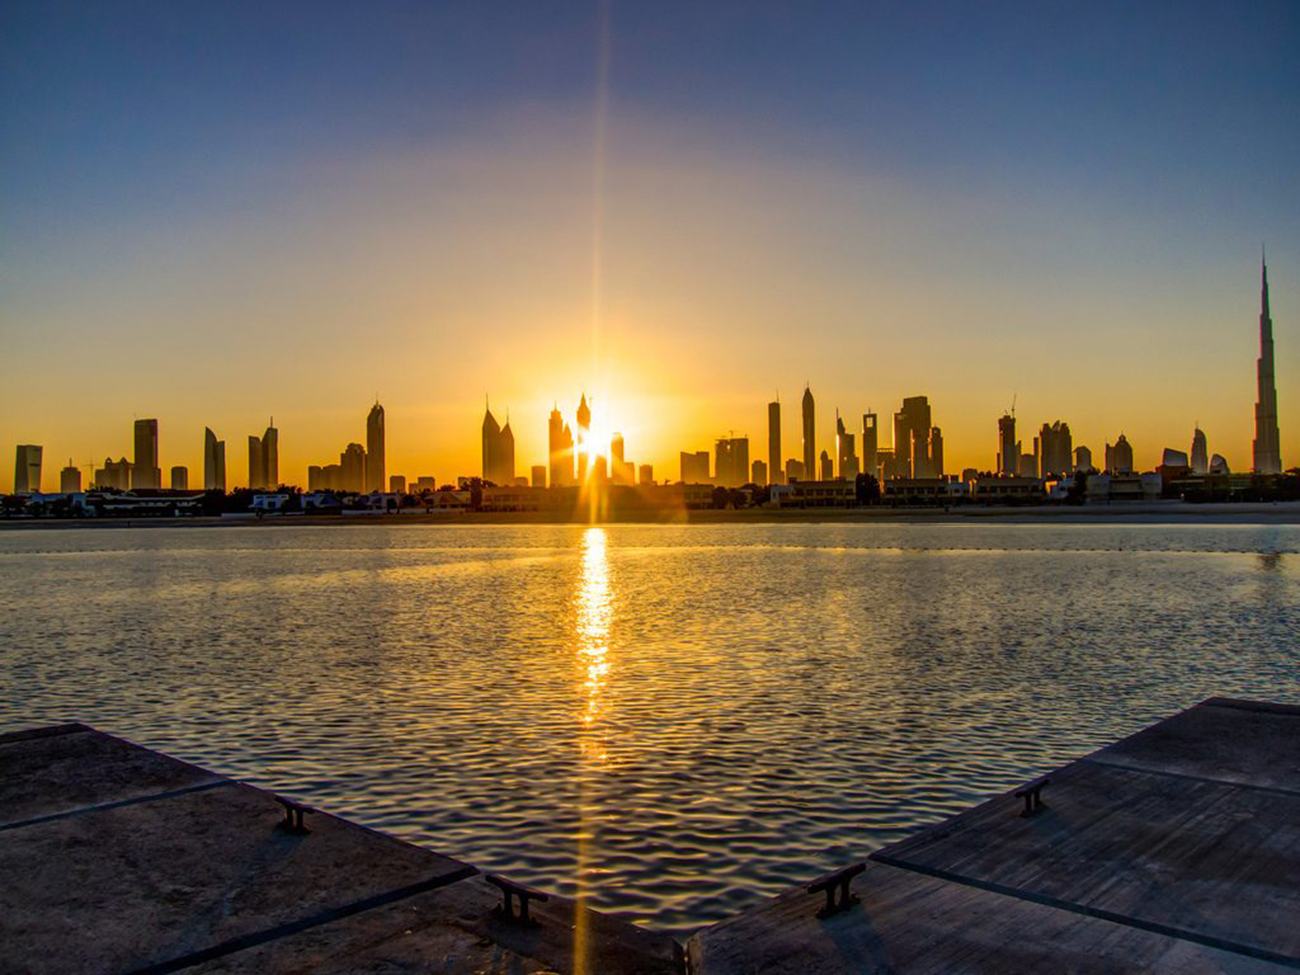 توقعات الطقس ودرجات الحرارة غداً - عبر الإمارات - أخبار ...